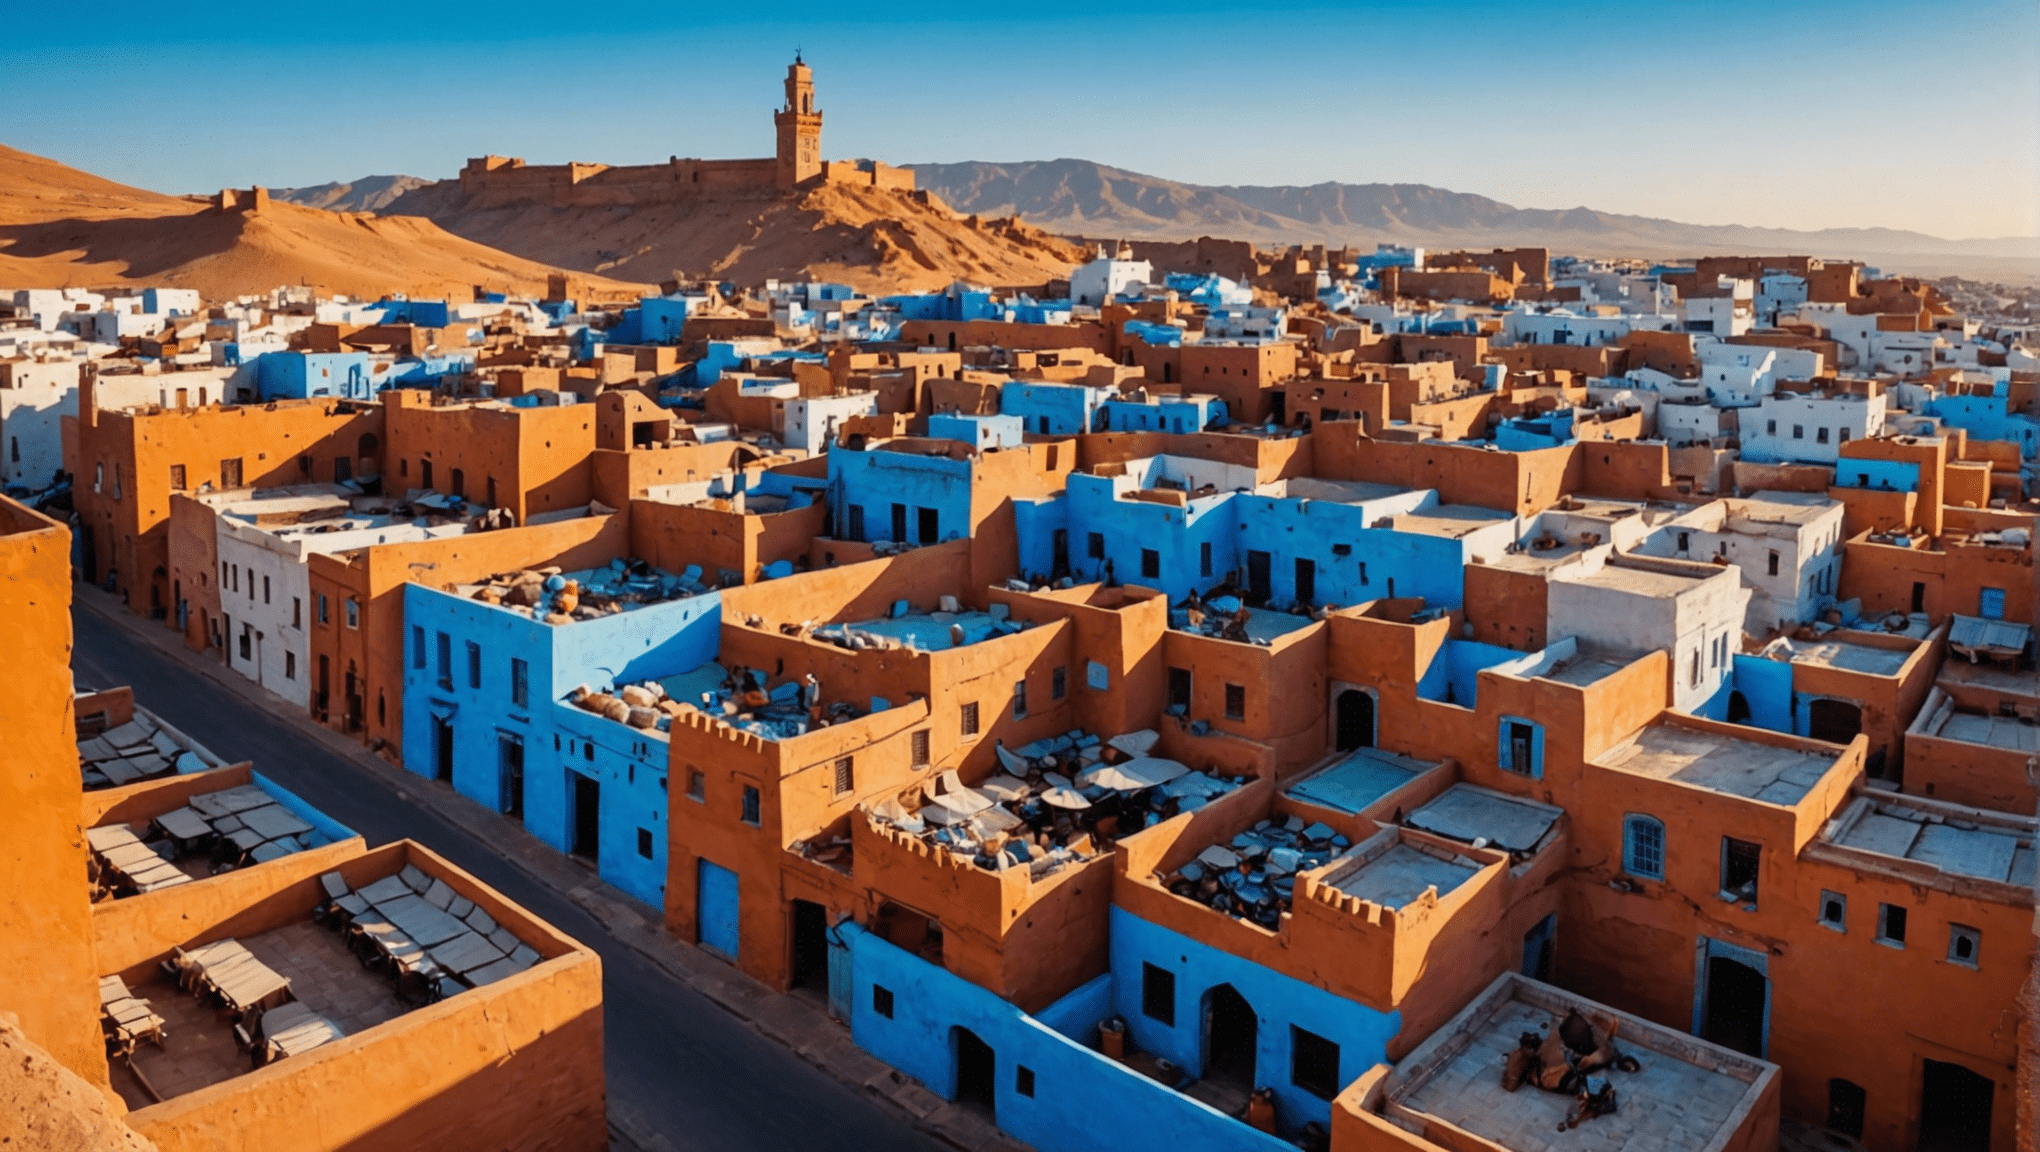 scopri le location cinematografiche più mozzafiato del Marocco e lasciati ispirare a visitare questi luoghi meravigliosi per la tua prossima avventura.